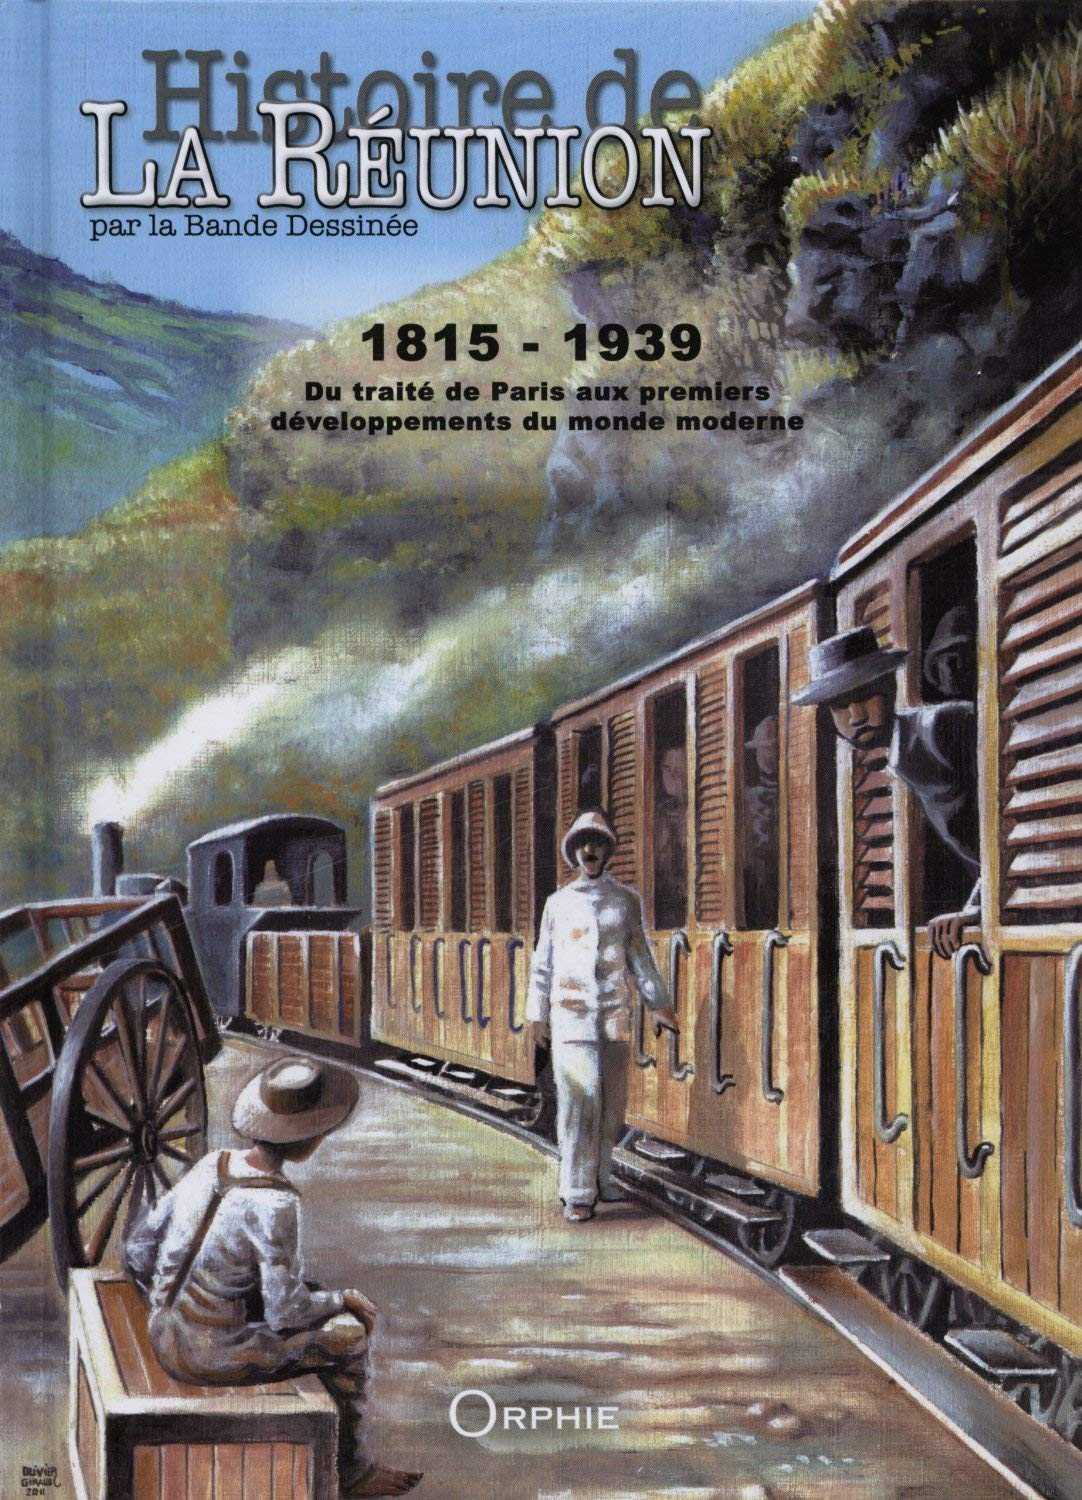 Histoire de La Réunion par la bande dessinée. Vol. 2. 1815-1939 : du traité de Paris aux premiers dé